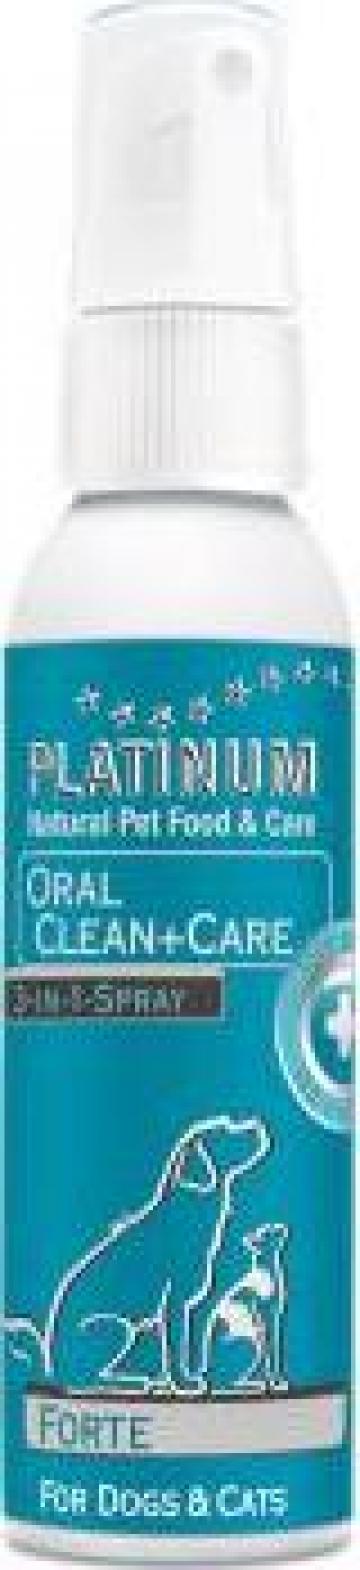 Solutie orala caini, pisici Platinum oral clean & care